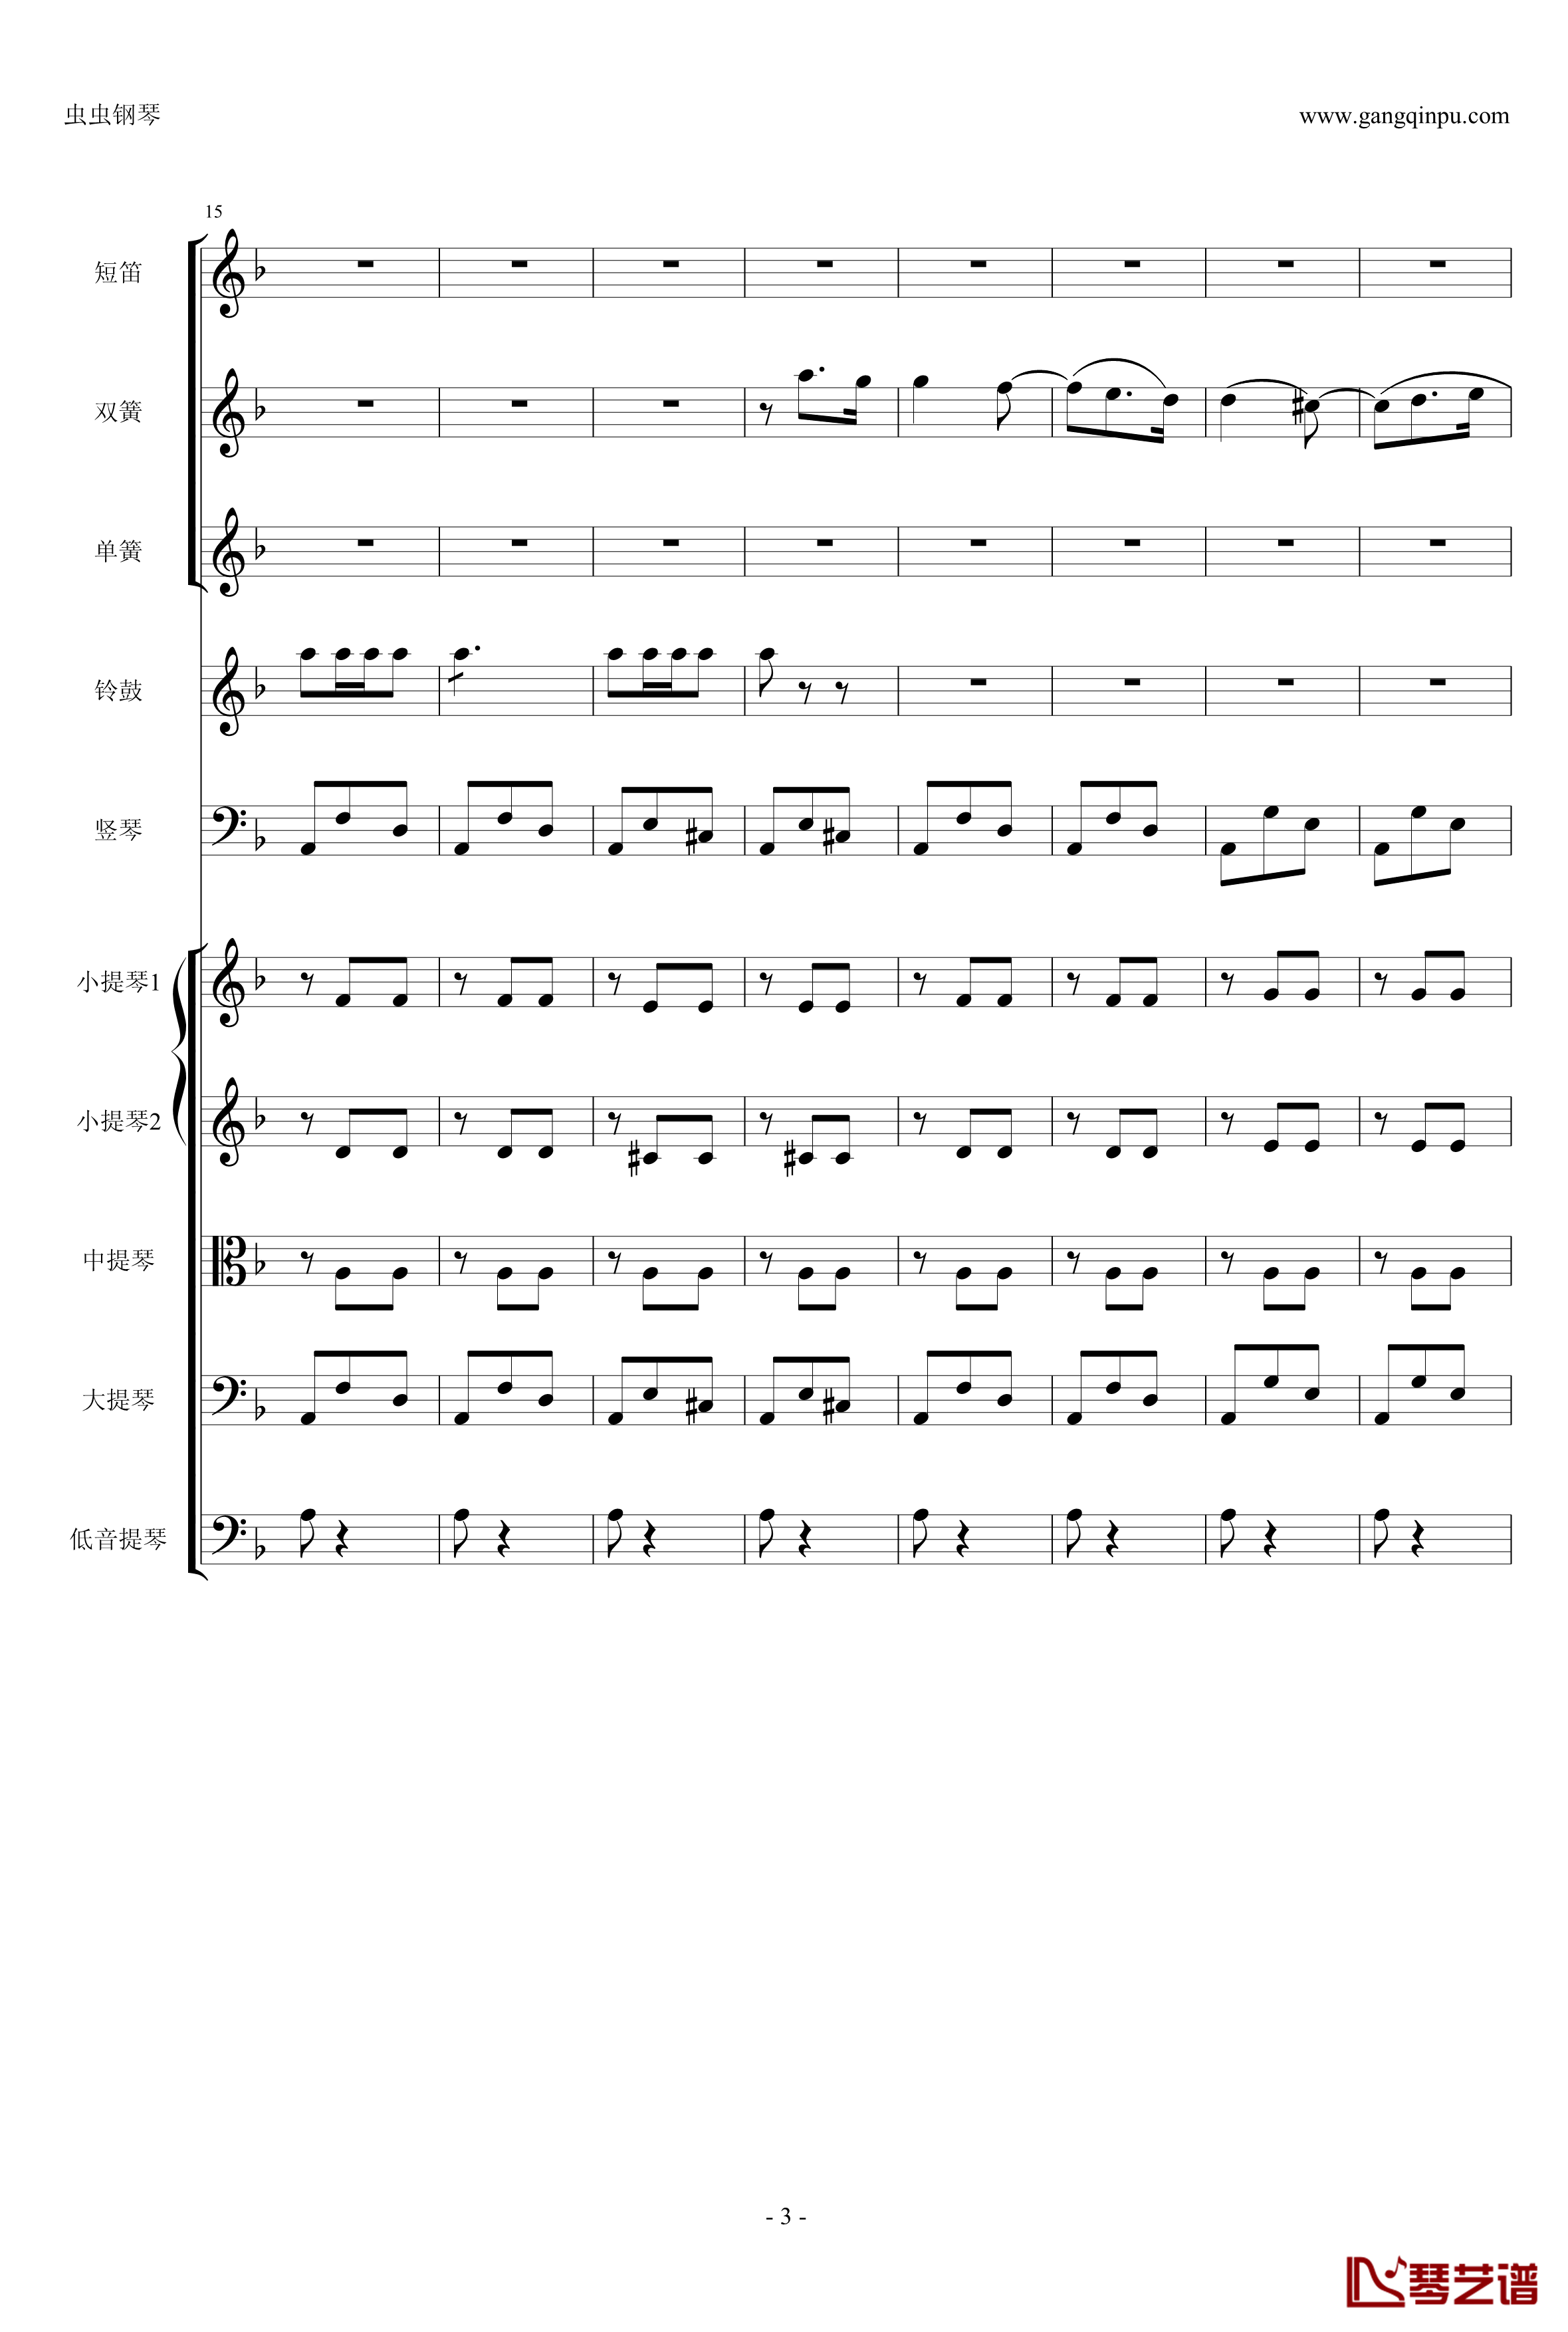 歌剧卡门选段钢琴谱-比才-Bizet- 第四幕间奏曲3